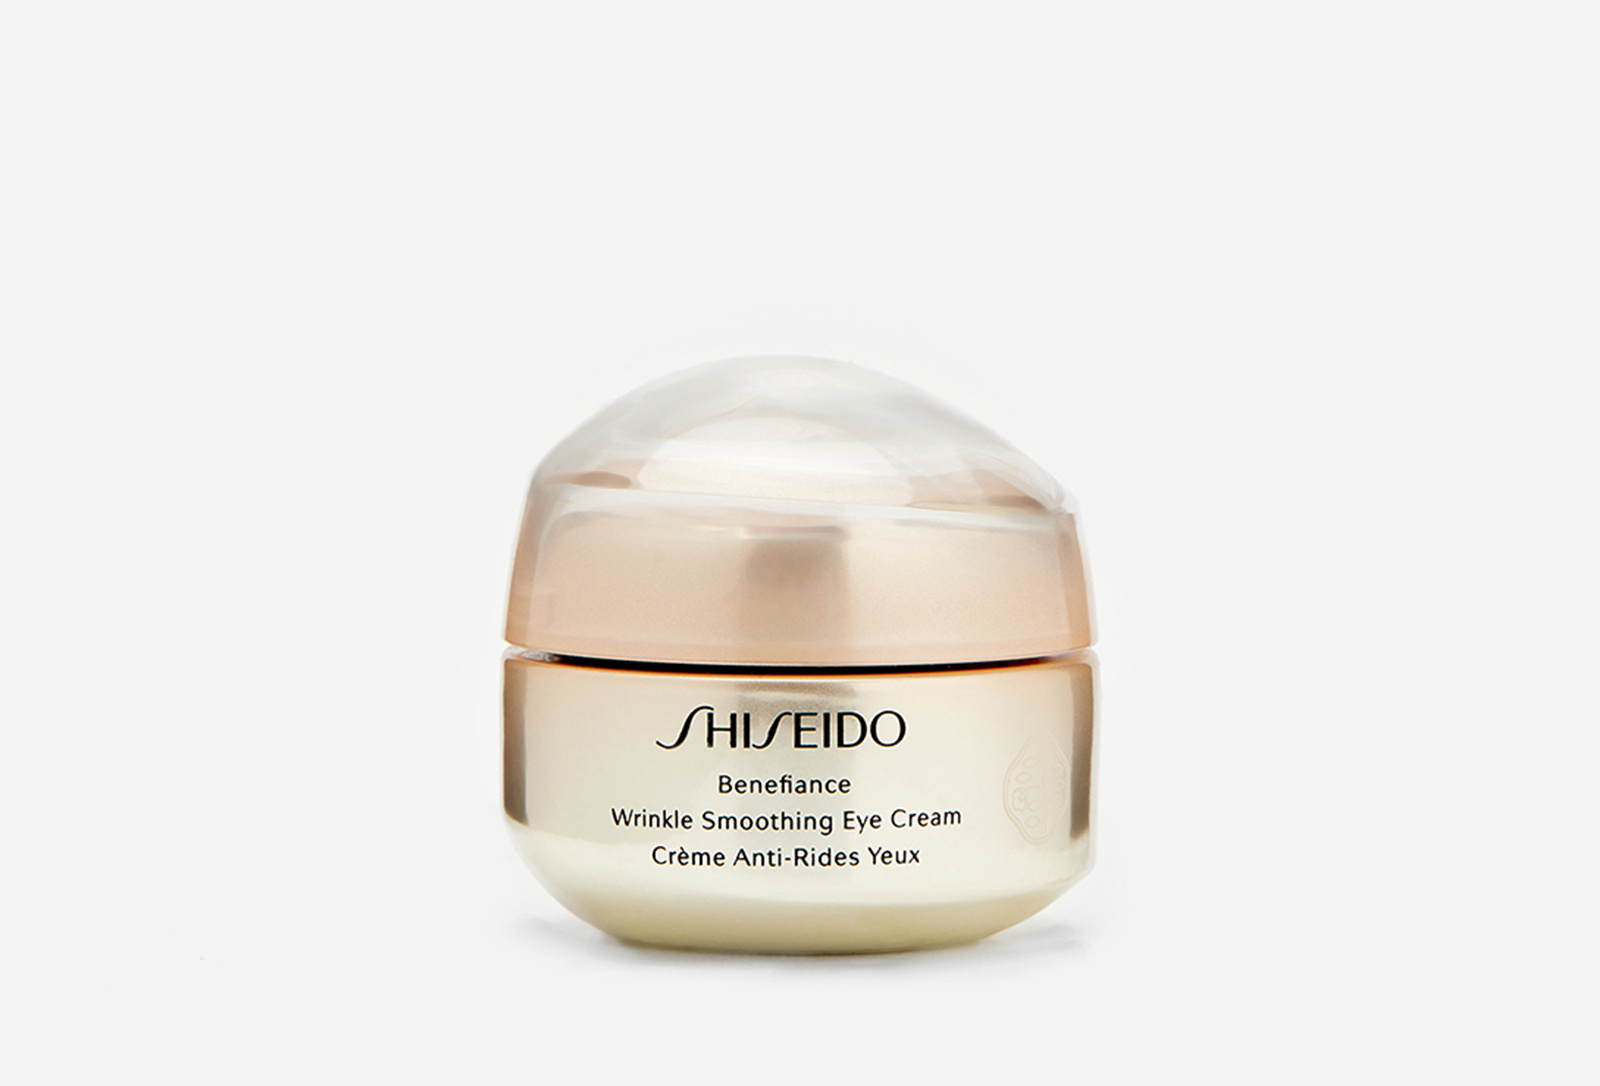 Shiseido benefiance wrinkle. Shiseido Benefiance Eye Cream. Shiseido Benefiance Wrinkle Smoothing Eye Cream. Shiseido Wrinkle Smoothing Cream. Shiseido Benefiance Wrinkle крем вокруг глаз.